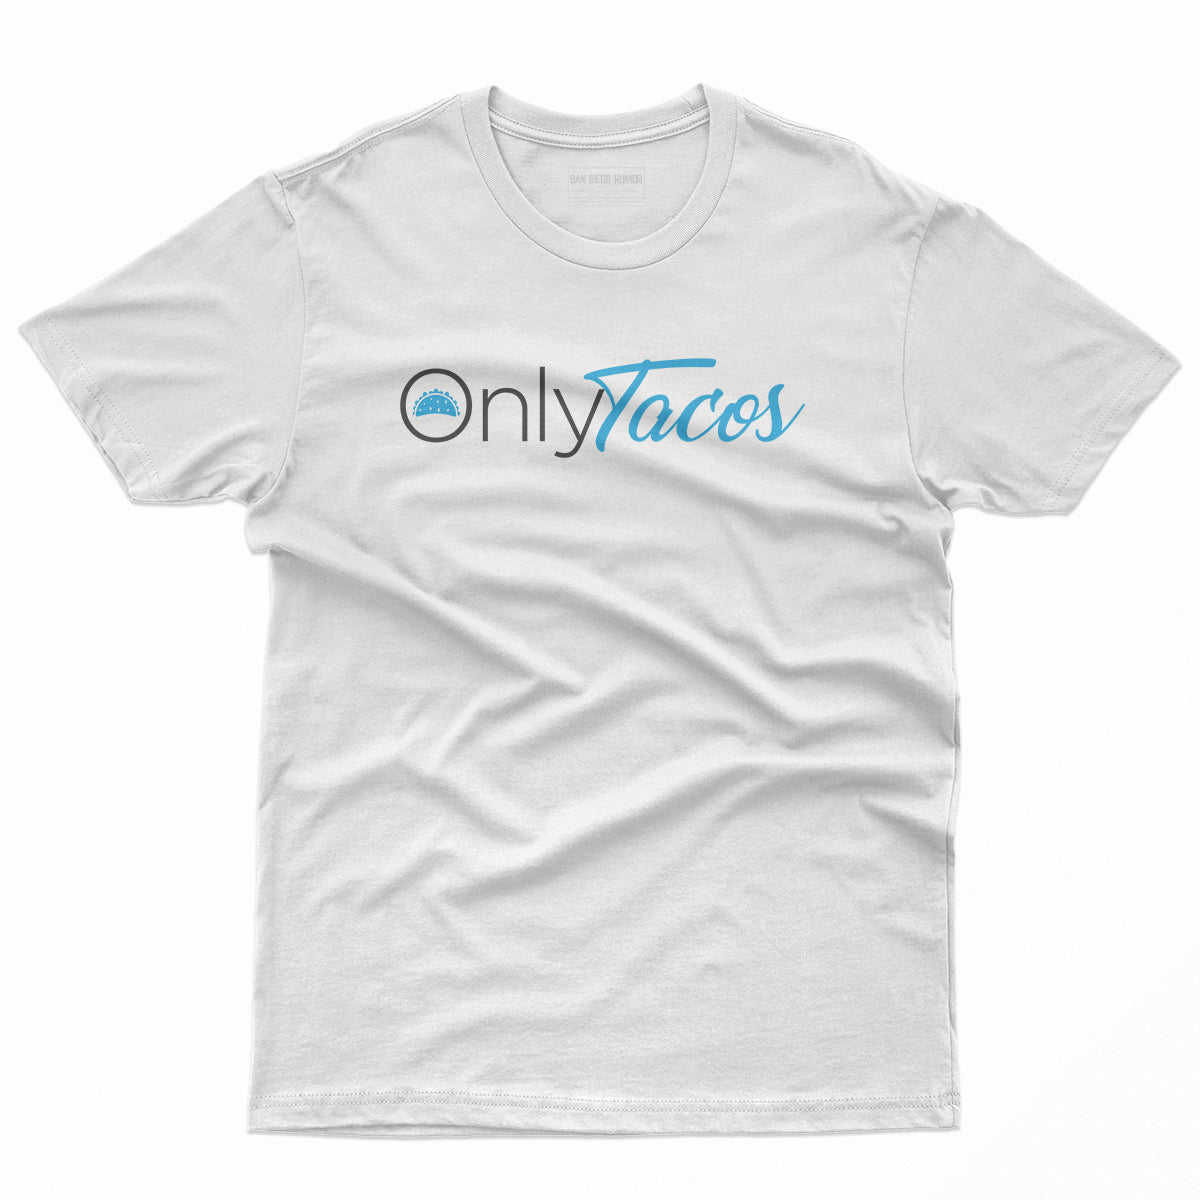 OnlyTacos T-Shirt (White) - Unisex